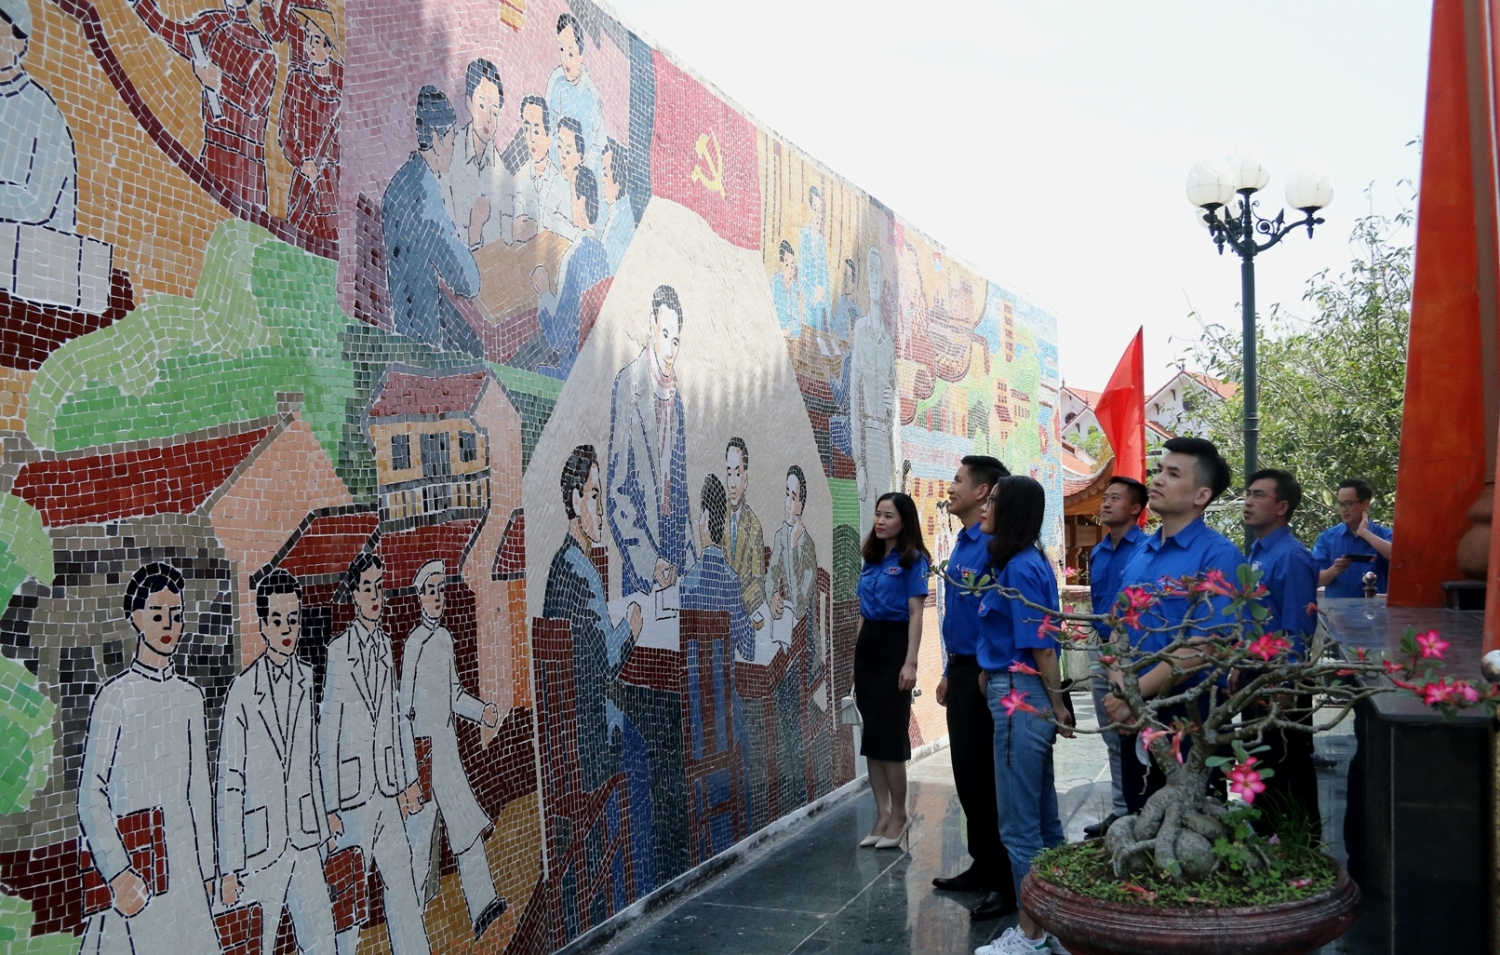 Tuổi trẻ PETROCONs tổ chức về nguồn giáo dục truyền thống lịch sử tại Thái Bình